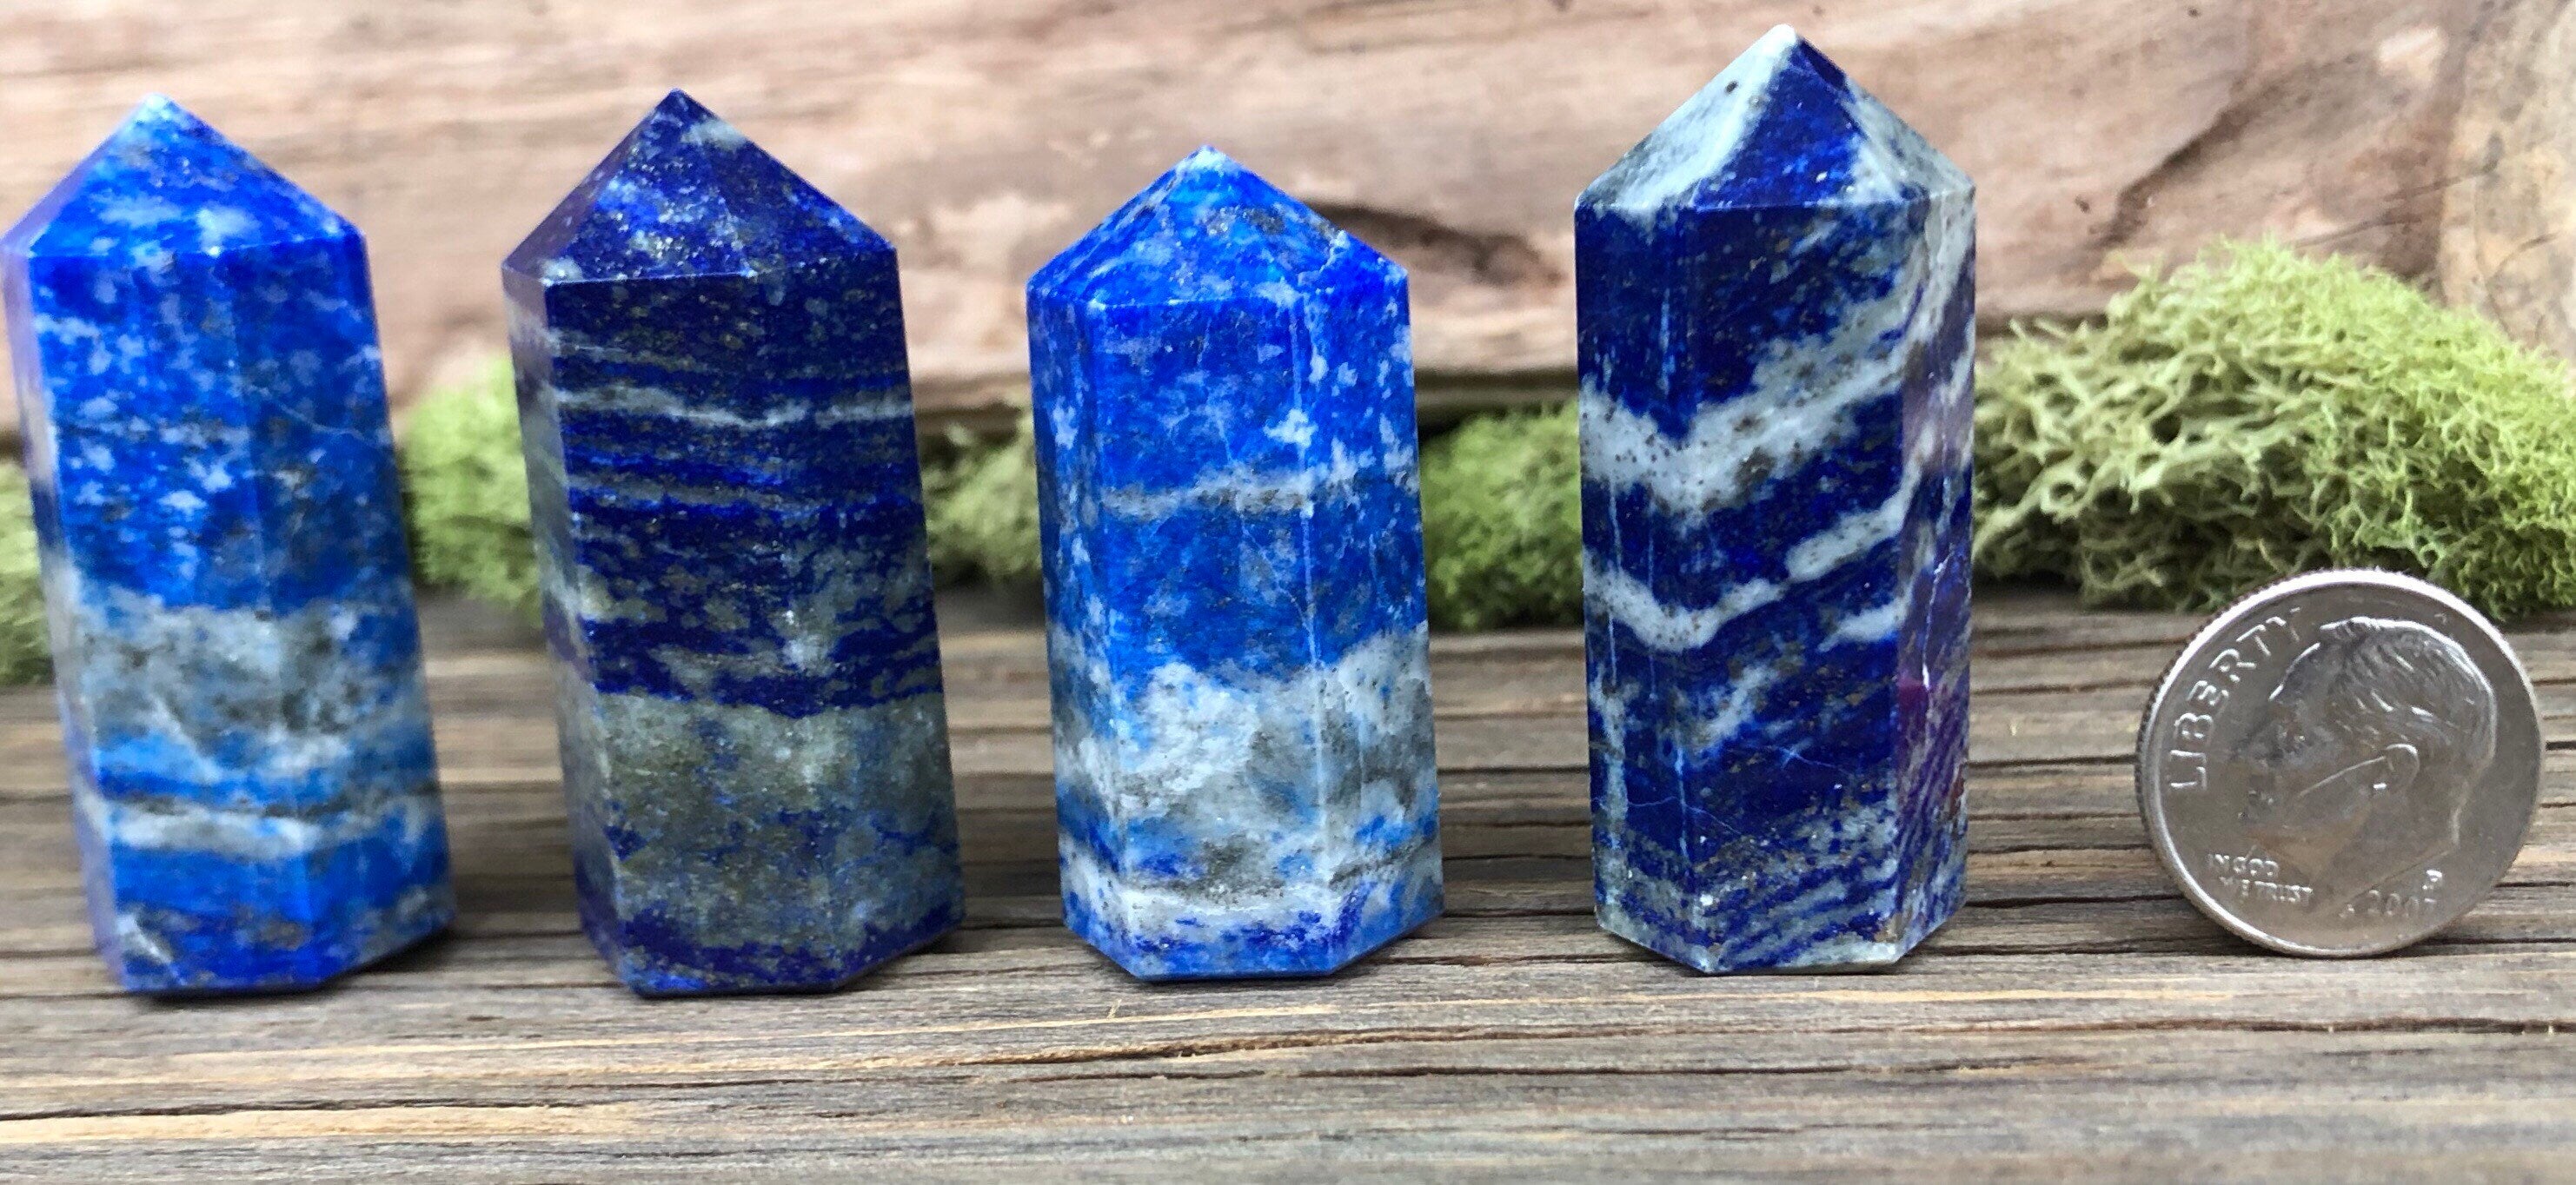 Lapis Lazuli Healing Crystal Tower Point